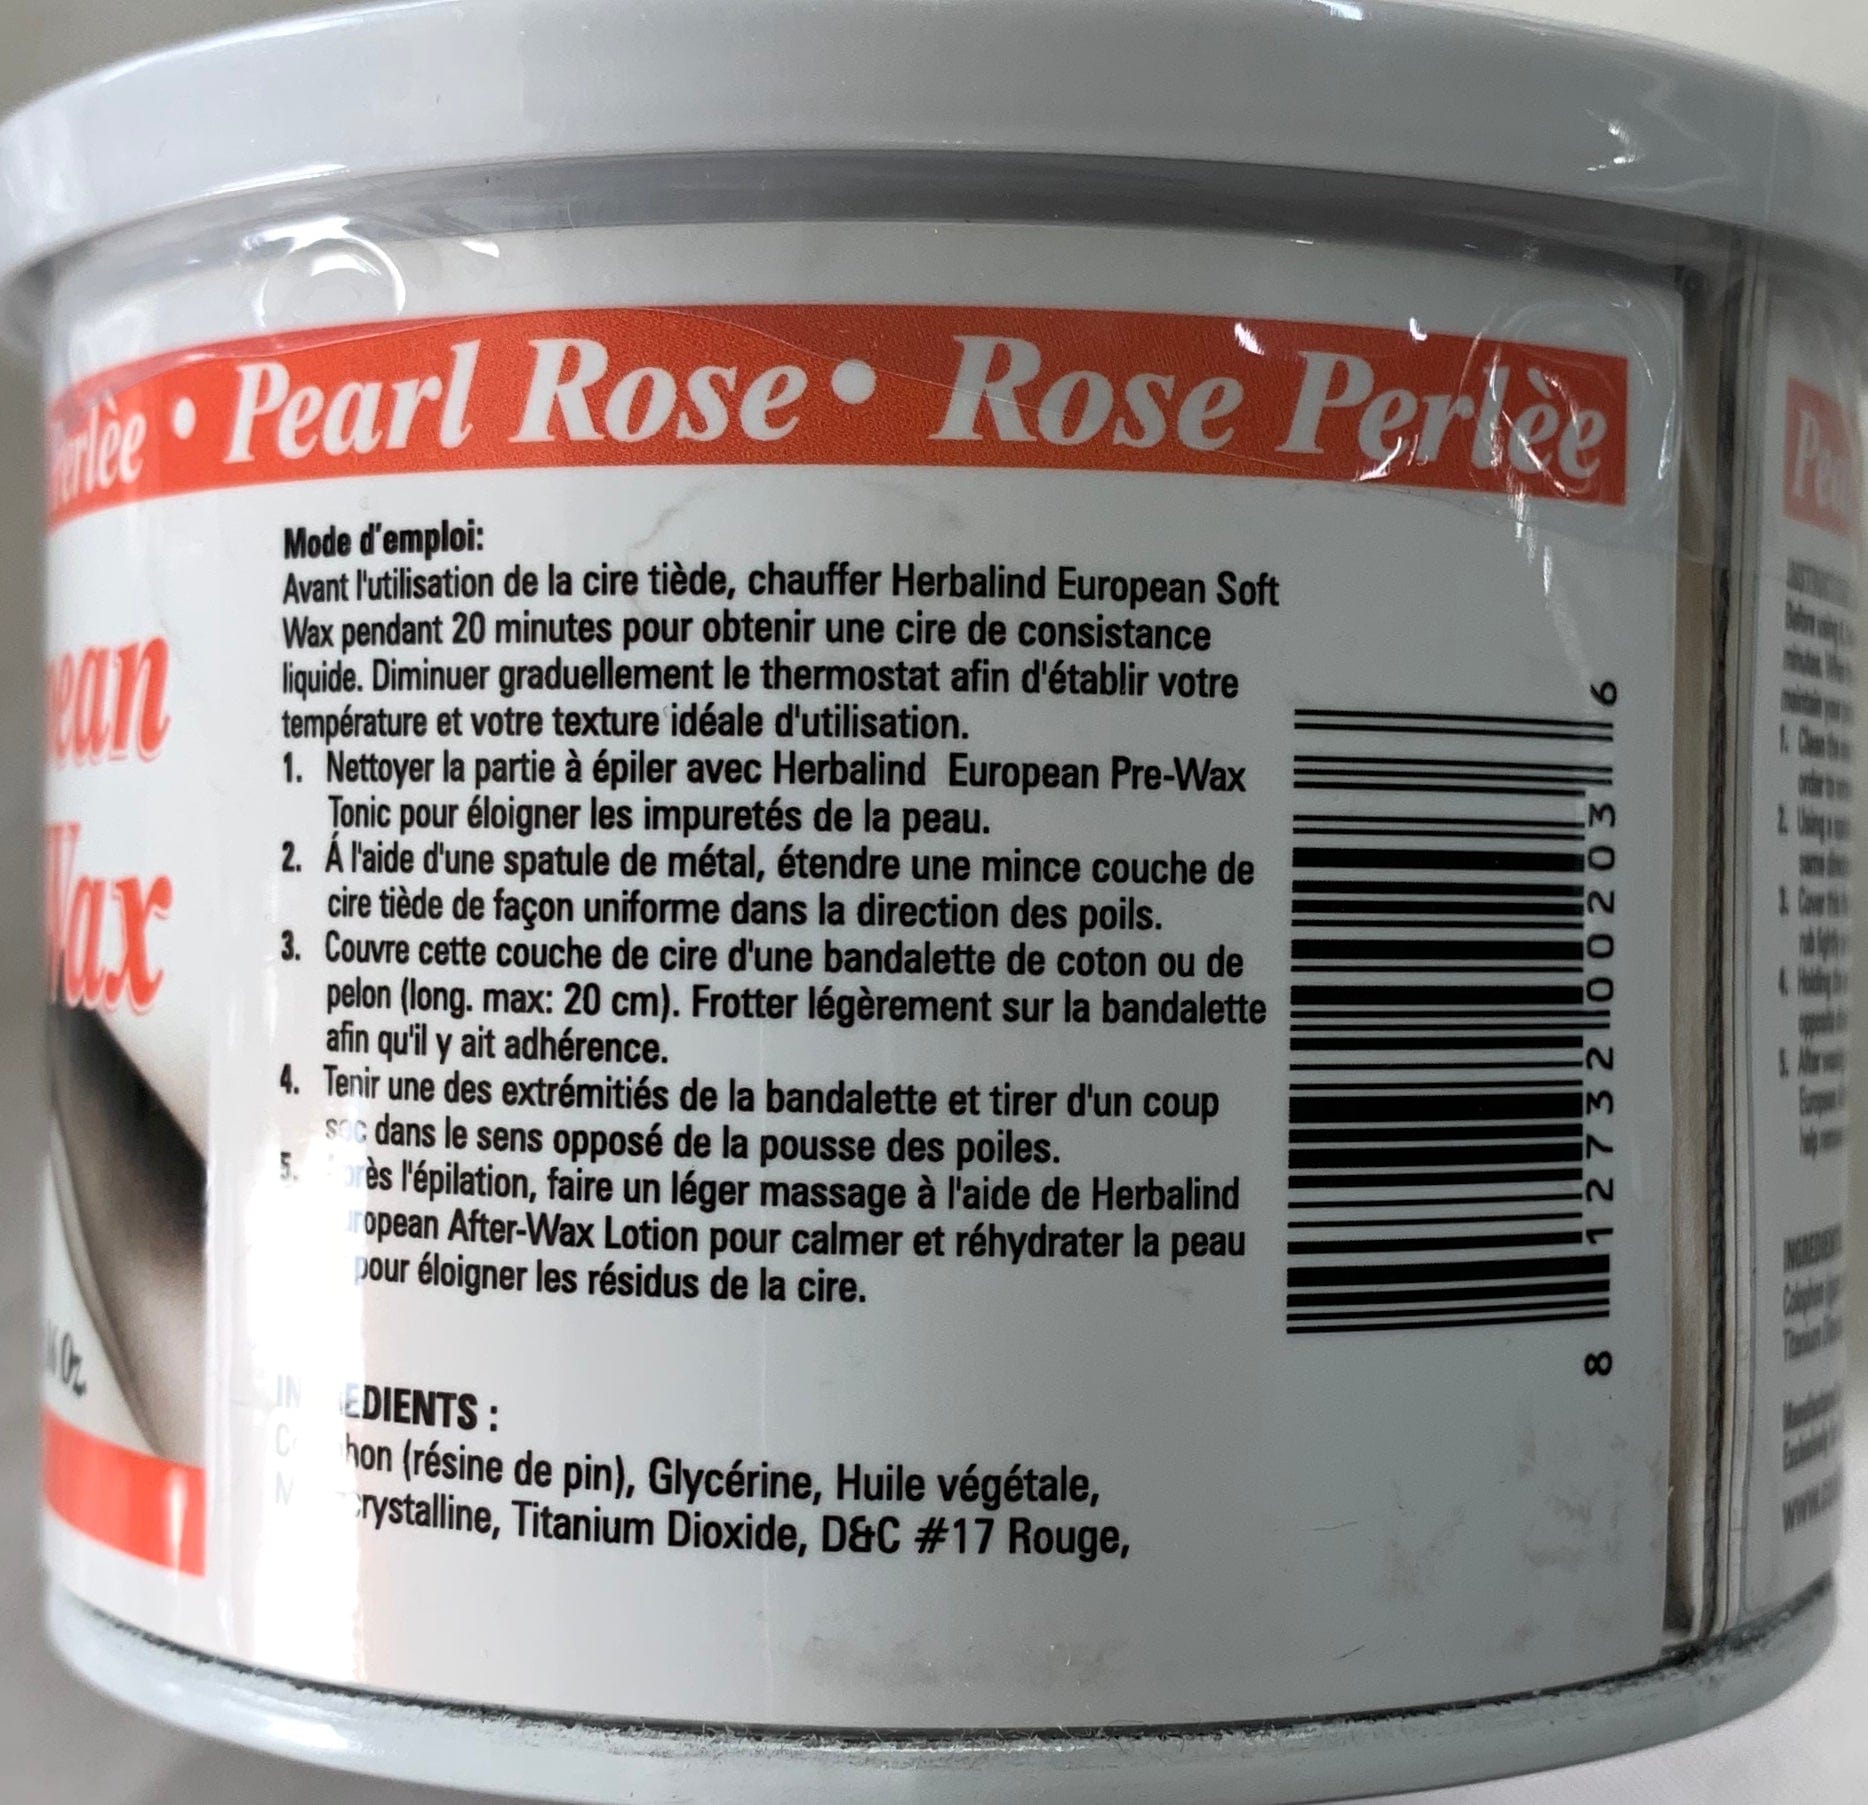 Hair Removal Wax Rose Pearl European Soft Wax 16oz Body Wax